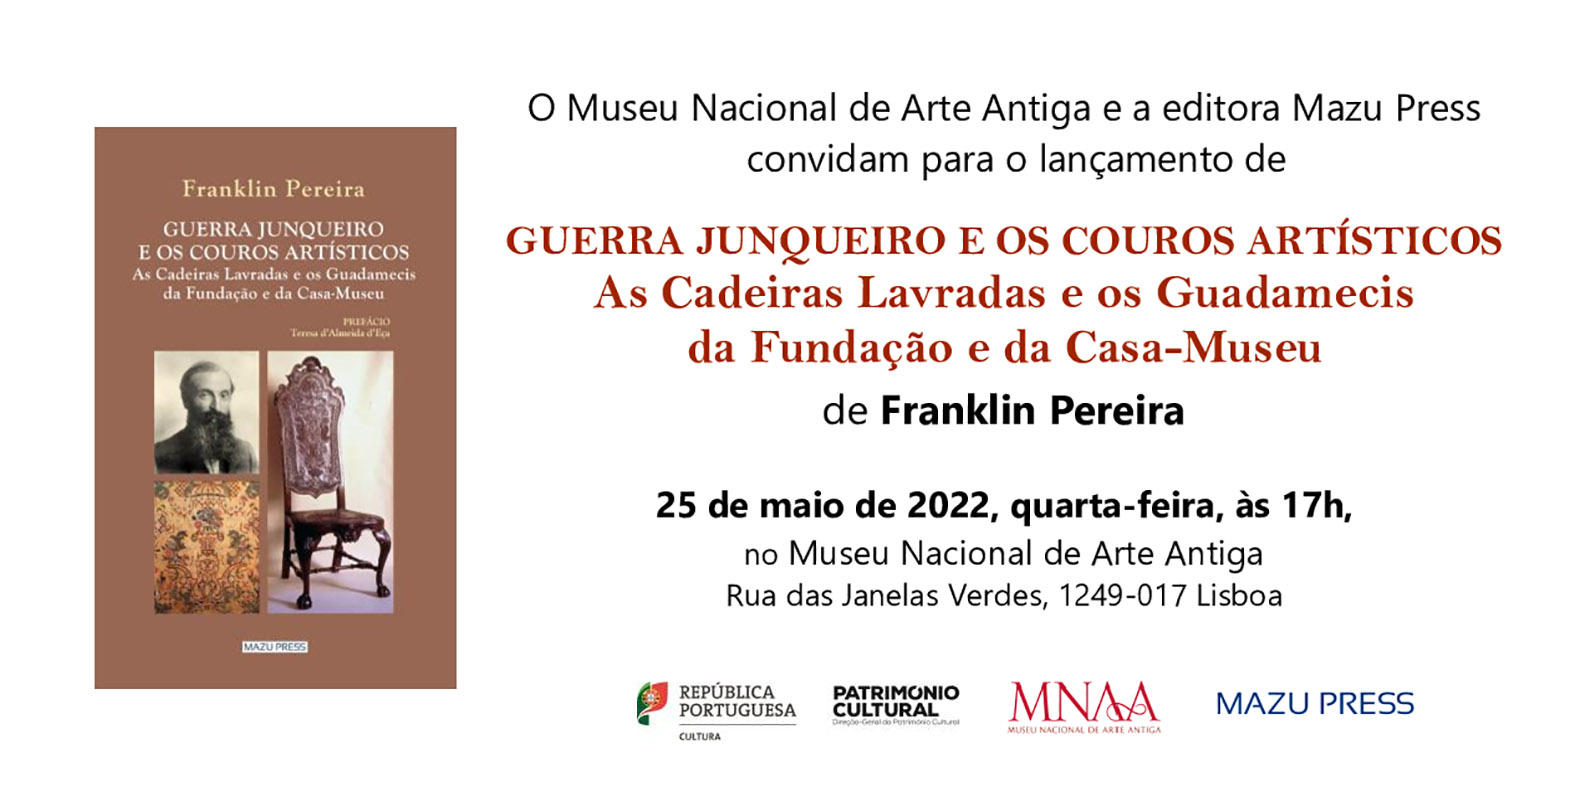 Franklin Pereira: "Guerra Junqueiro e os Couros Artísticos: As Cadeiras Lavradas e os Guadamecis da Fundação e da Casa-Museu"